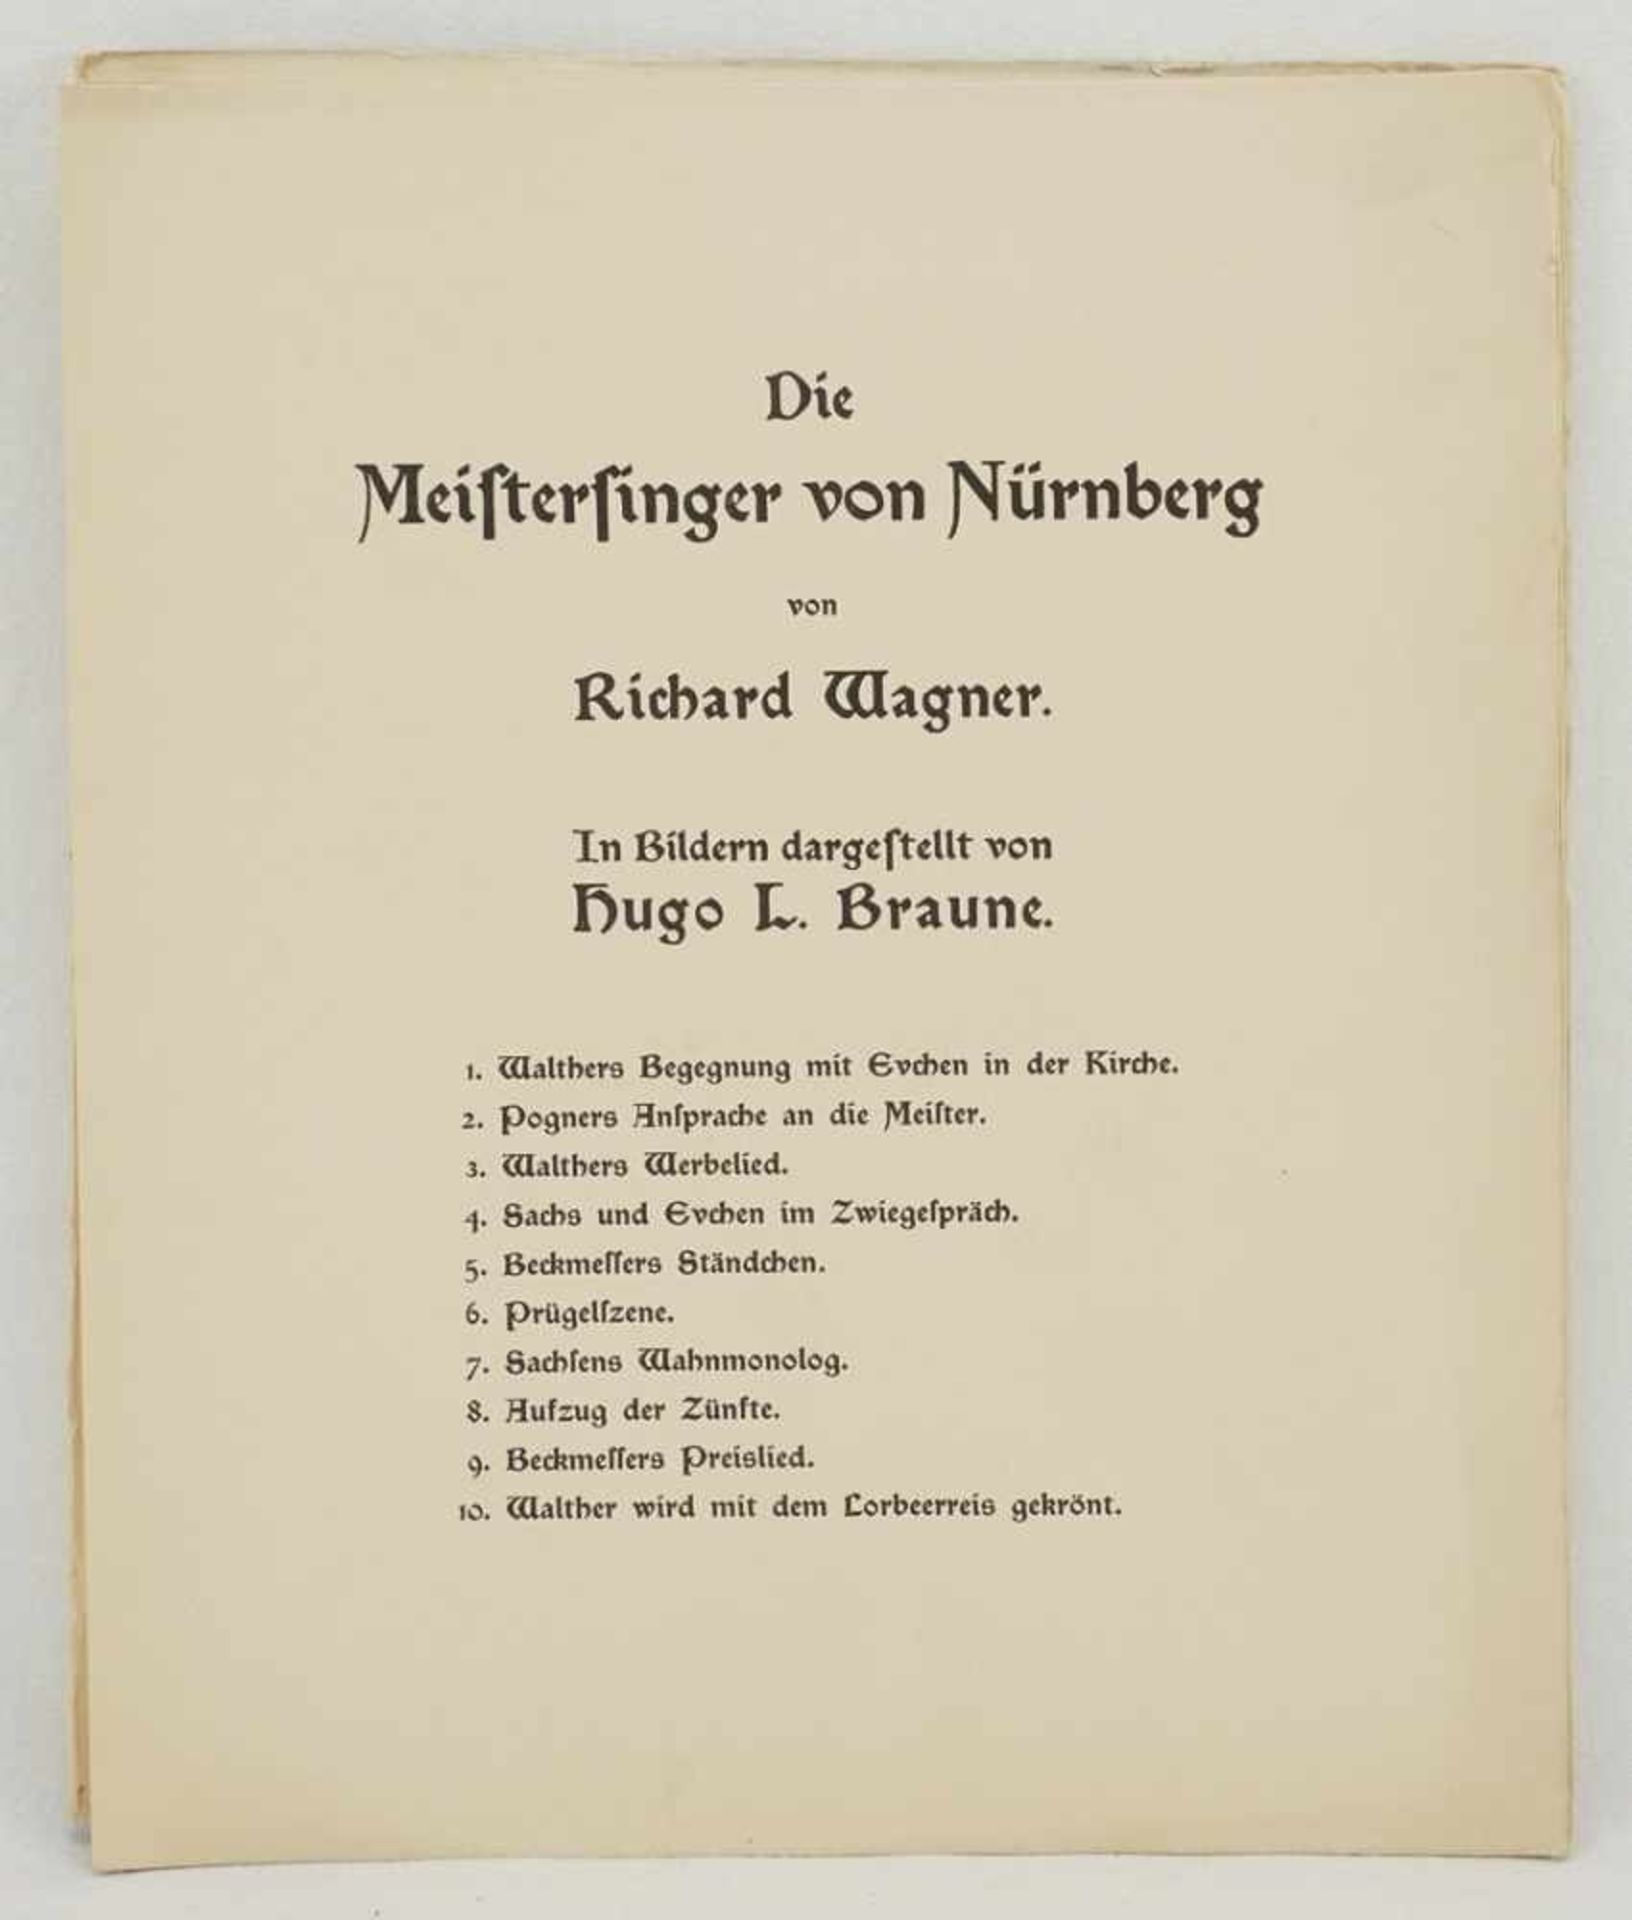 Hugo L. Braune, "Die Meistersinger von Nürnberg von Richard Wagner" - Bild 2 aus 4